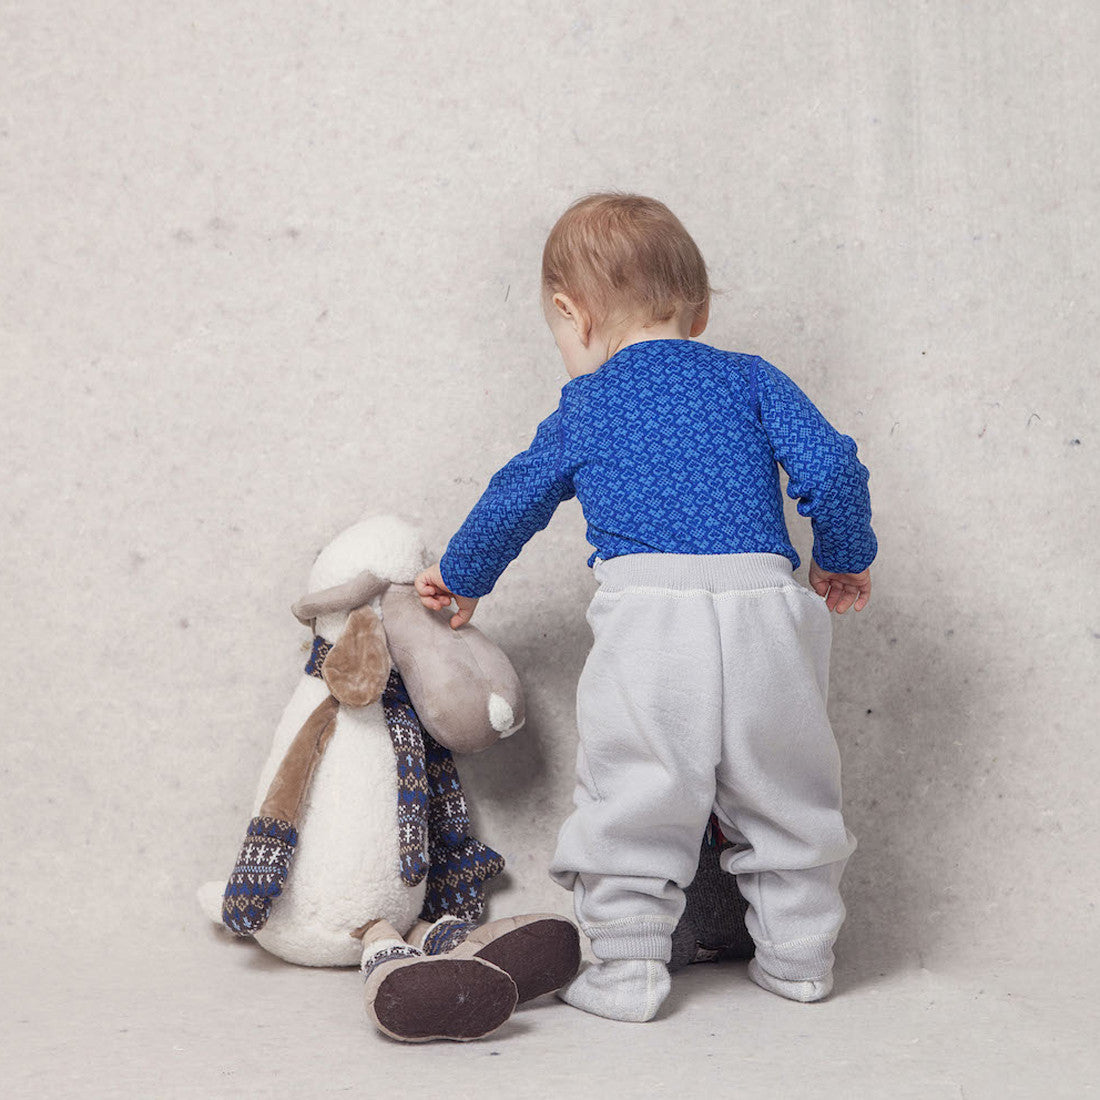 LANACare Baby/Toddler Pants in Felted Organic Merino Wool